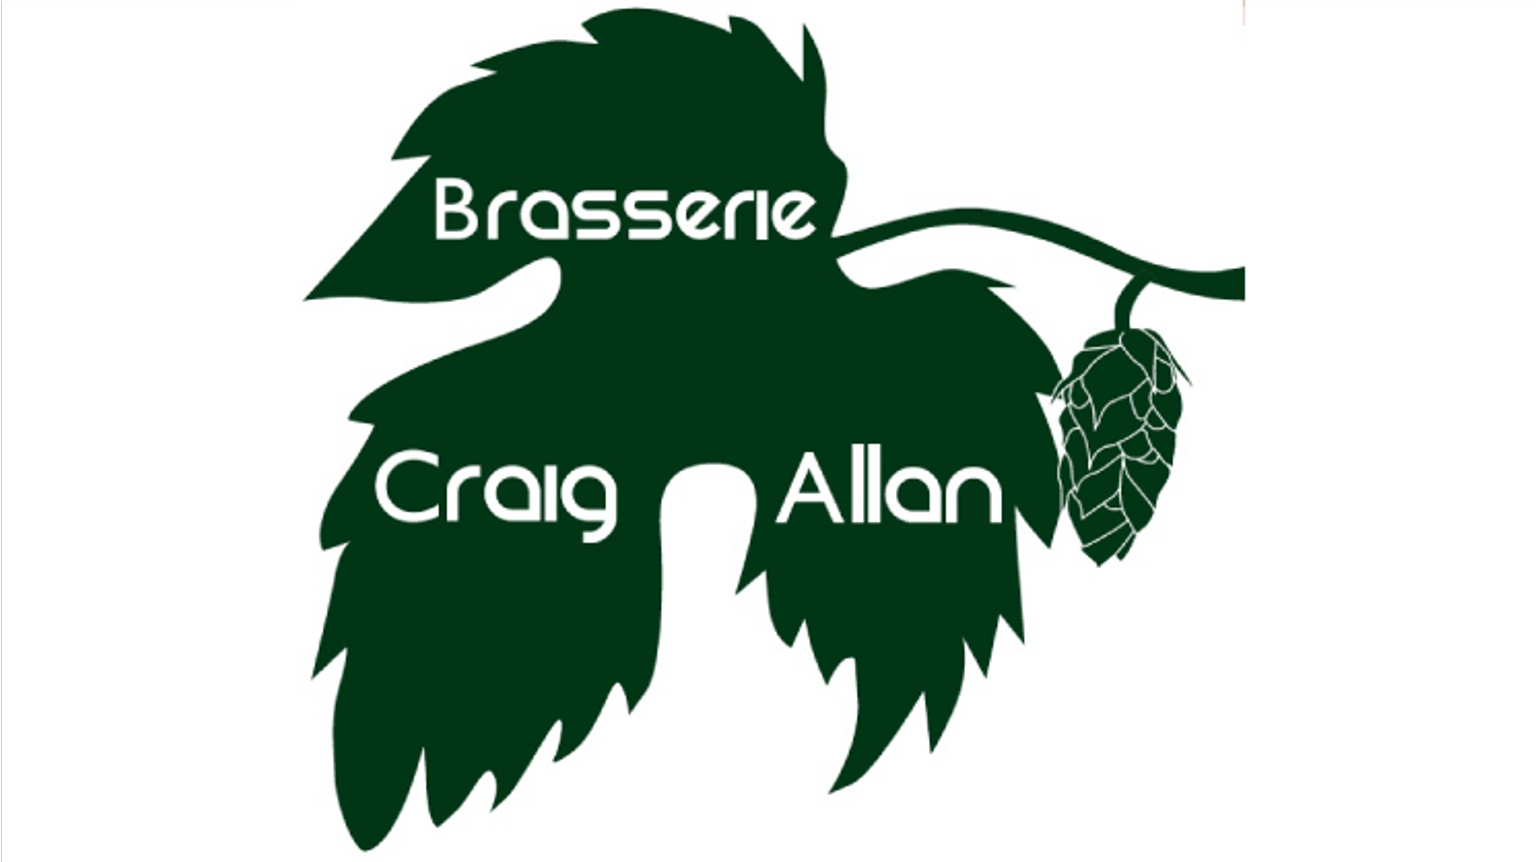 thumbnail for blog article named: Craig Allan, le brasseur écossais installé dans l'Oise